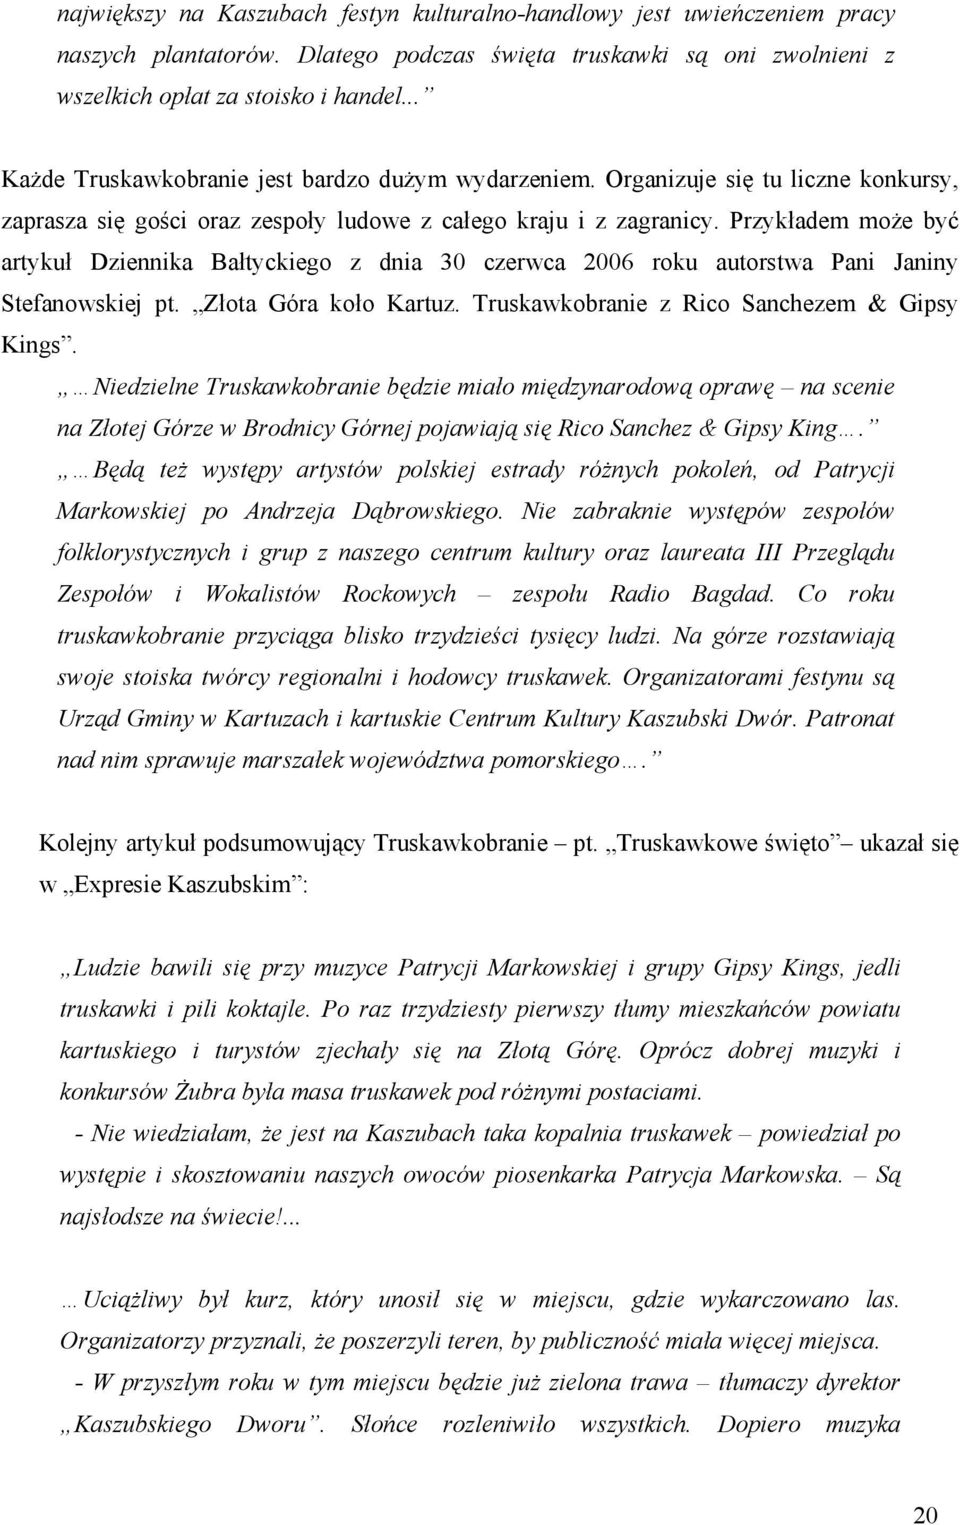 Przykładem może być artykuł Dziennika Bałtyckiego z dnia 30 czerwca 2006 roku autorstwa Pani Janiny Stefanowskiej pt. Złota Góra koło Kartuz. Truskawkobranie z Rico Sanchezem & Gipsy Kings.